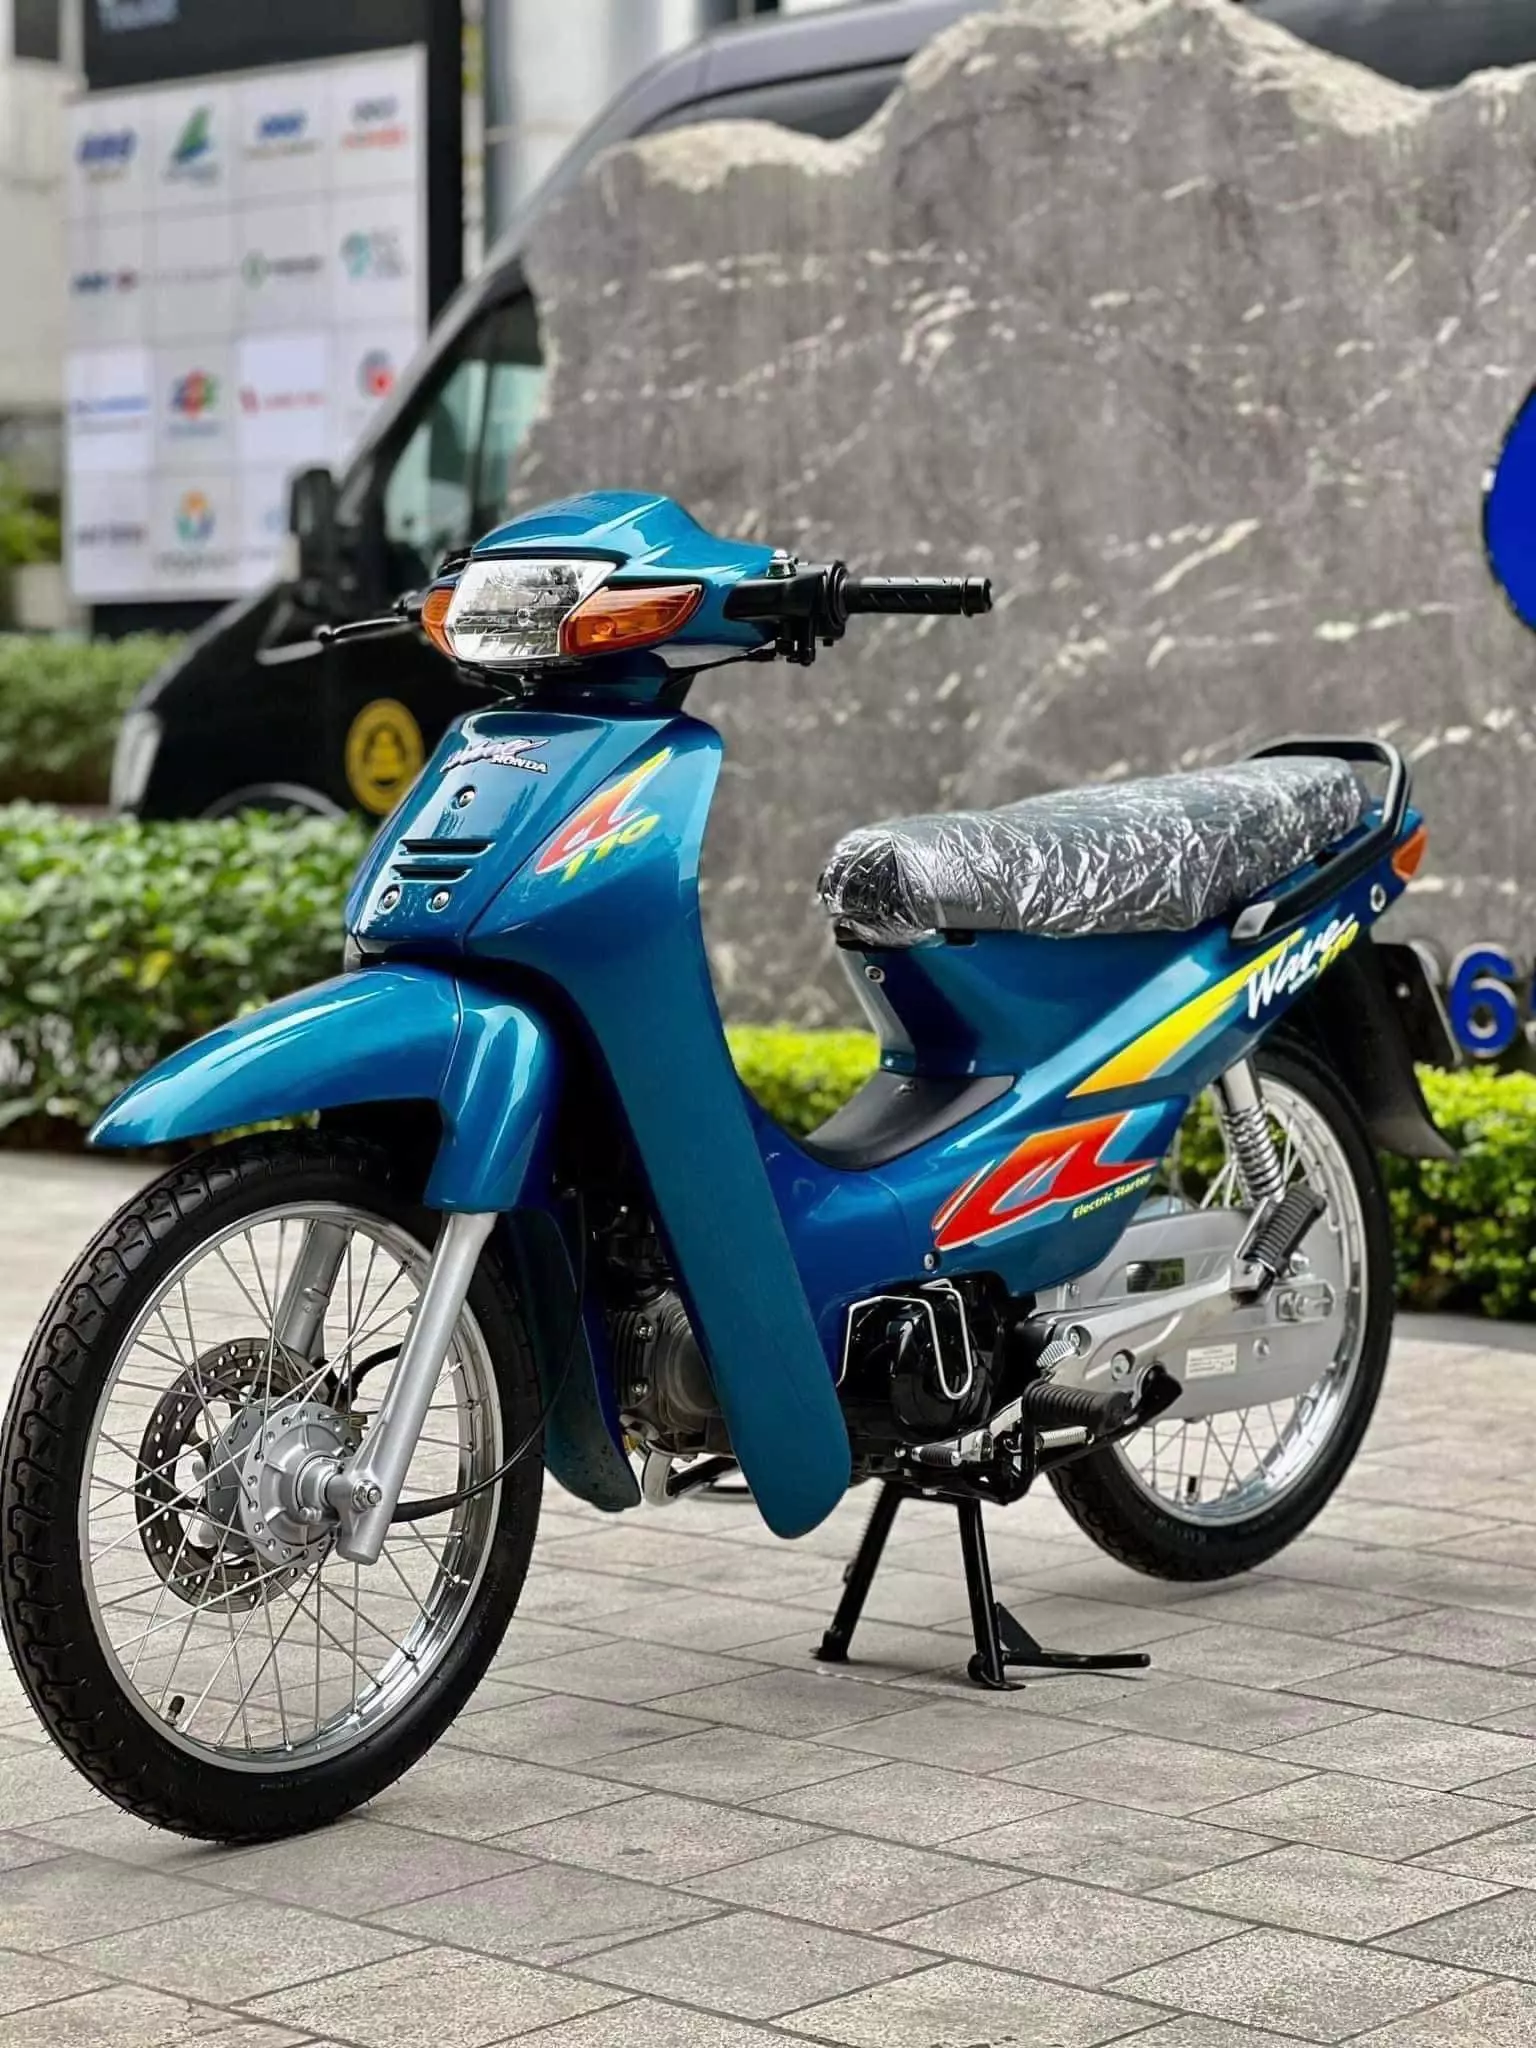 Chiếc xe máy số Honda Wave 110 nhập Thái có số khung số máy và biển số trùng nhau, đều là ngũ quý 8 độc nhất Việt Nam.